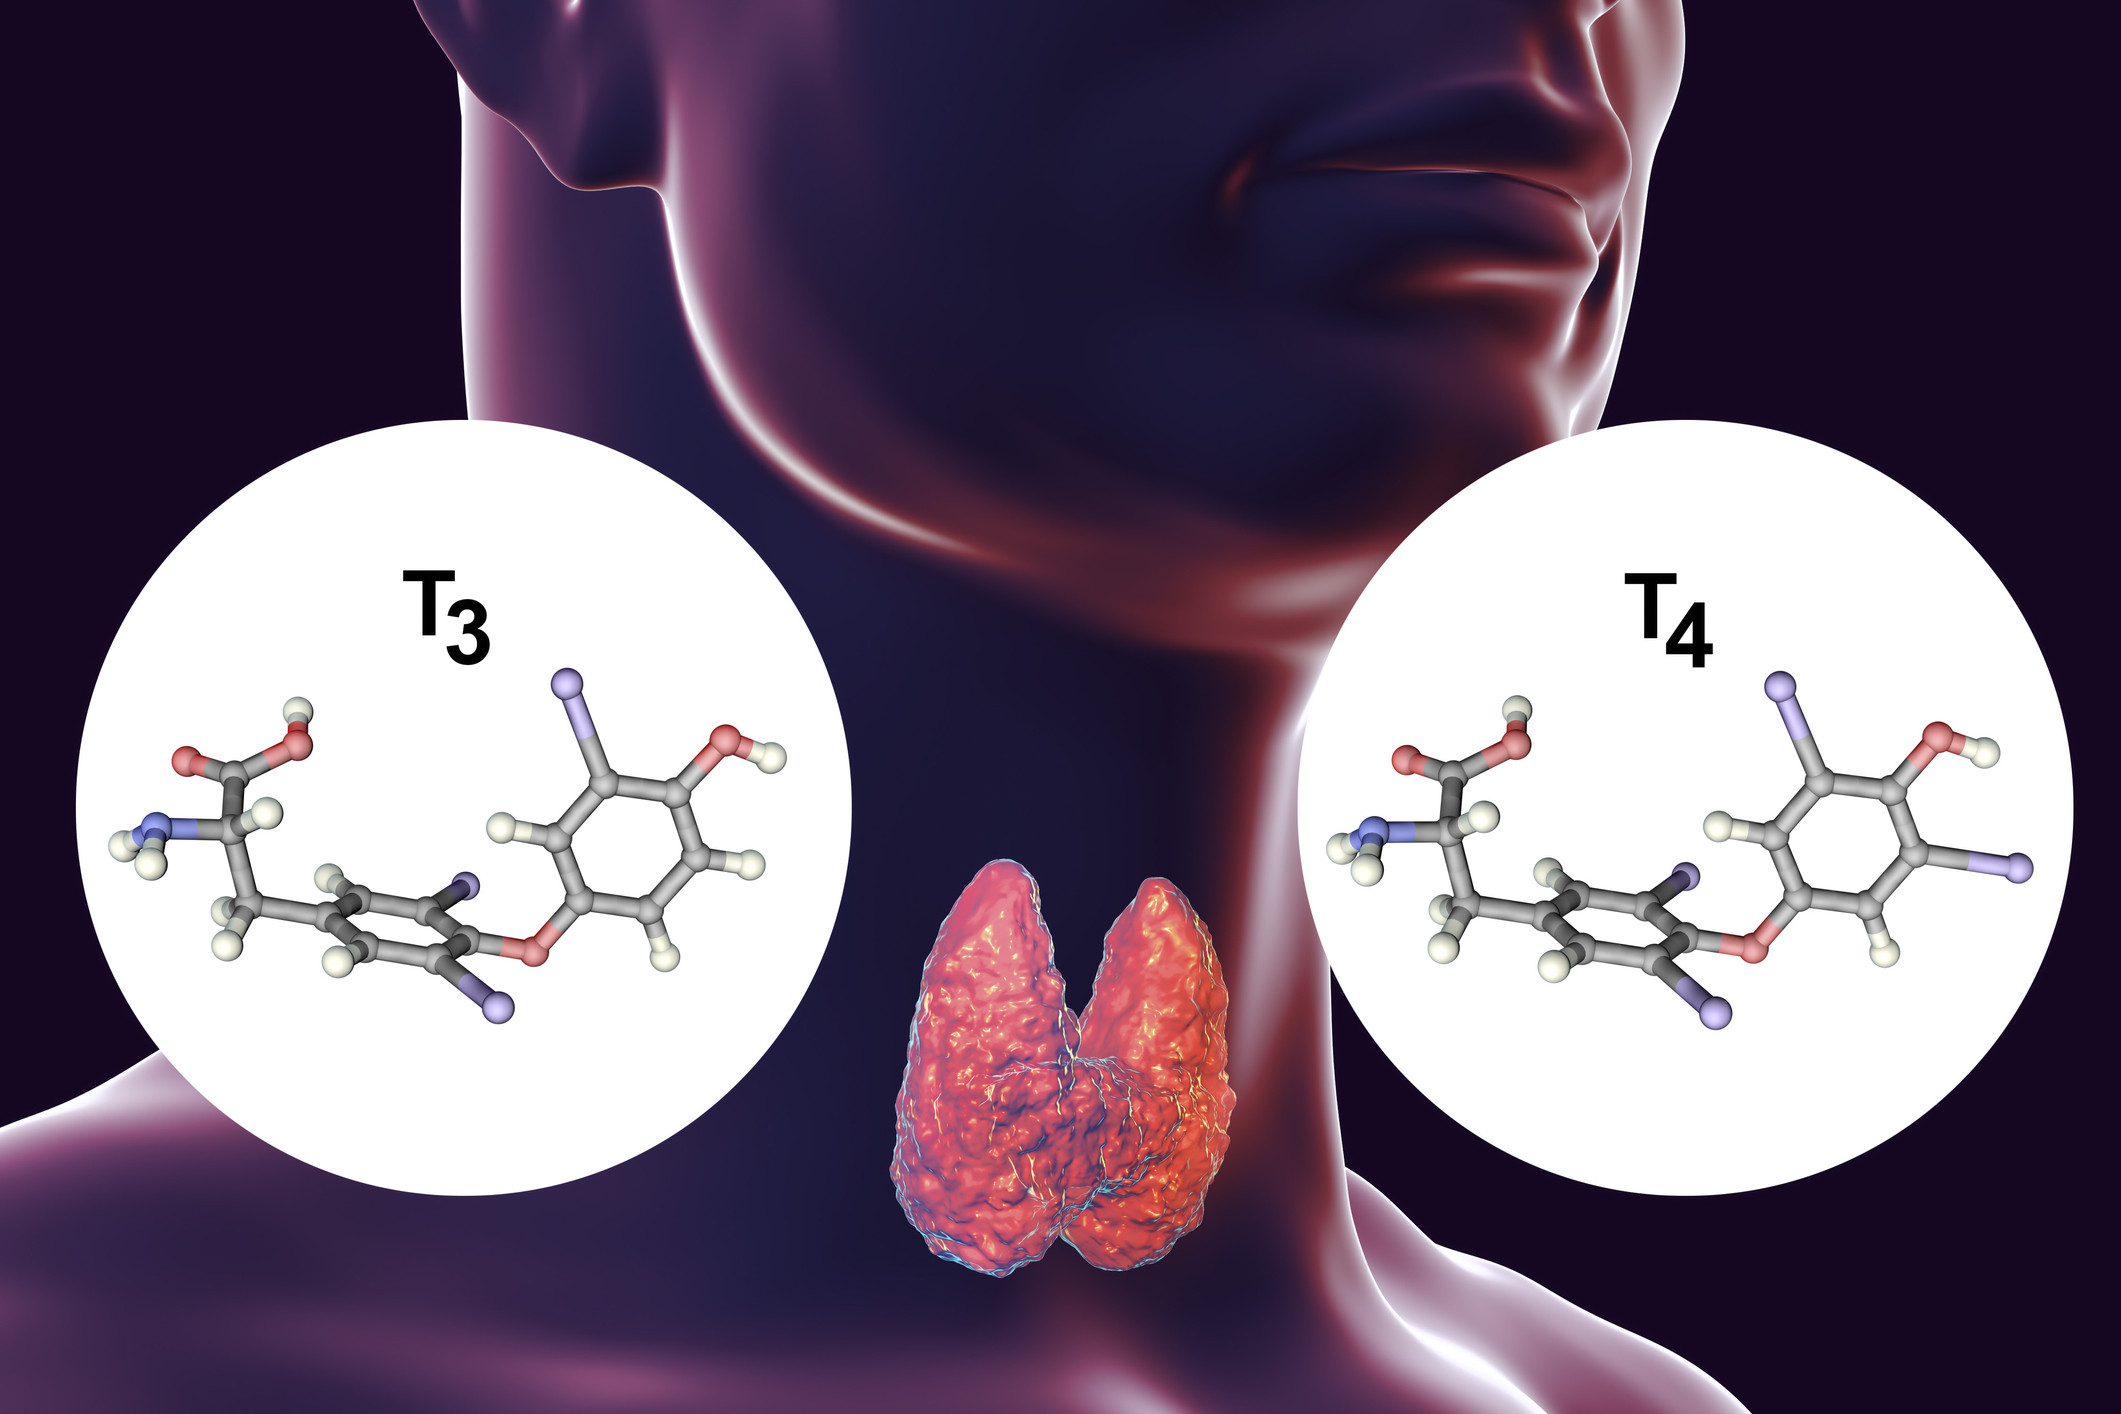 Štítná žláza je producentem hormonů štítné žlázy - tyroxinu (T4) a trijodtyroninu (T3).